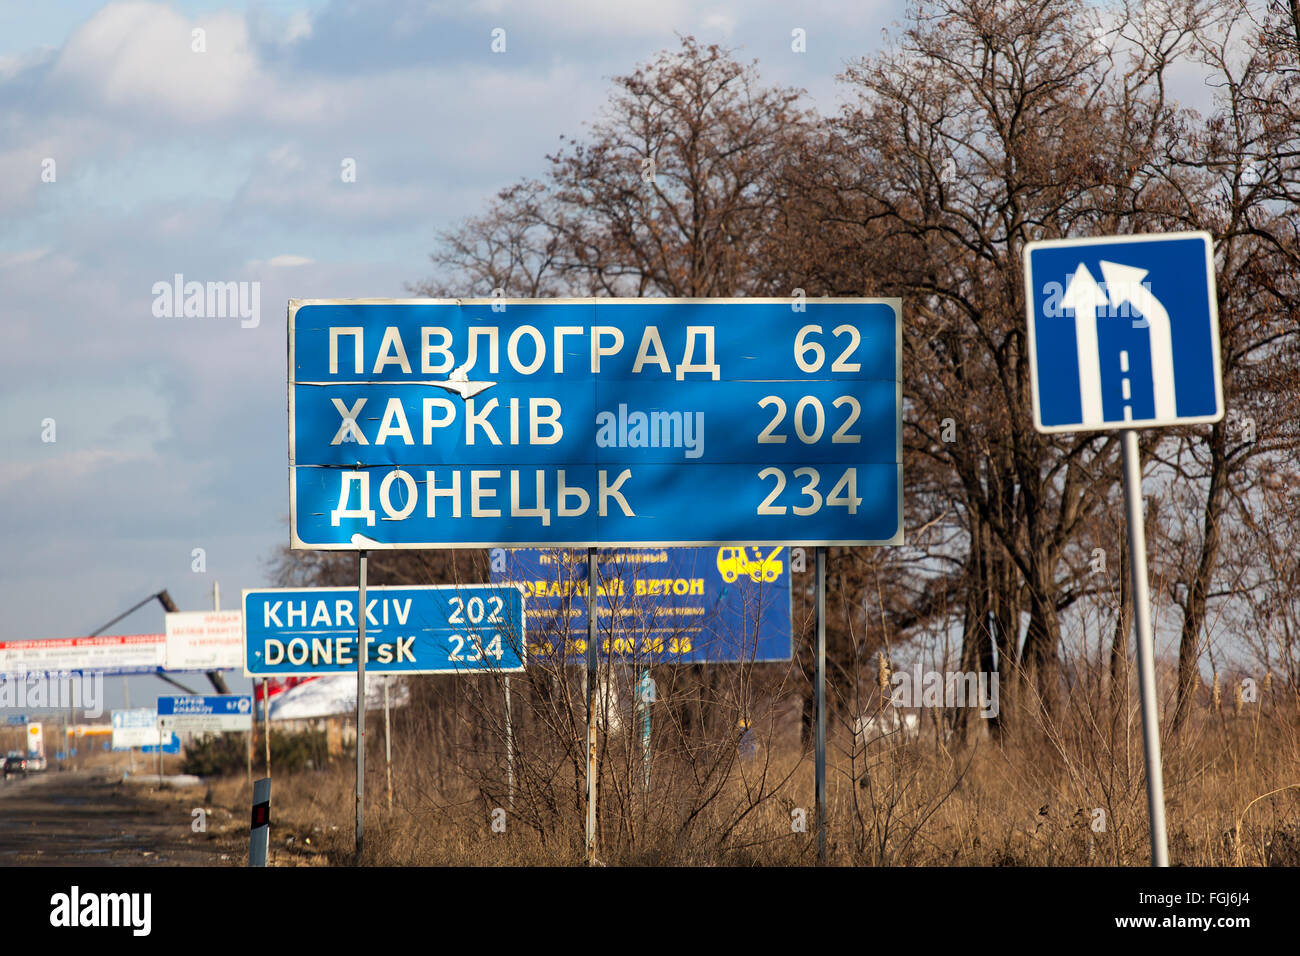 Dnepropetrovsk, Ukraine - 7. Februar 2016: Ein Schild mit den Worten: Pavlograd, Harkiv, Doneck Fotografie ergriffen wurden, während der Fahrt, Bewegungsunschärfe Stockfoto